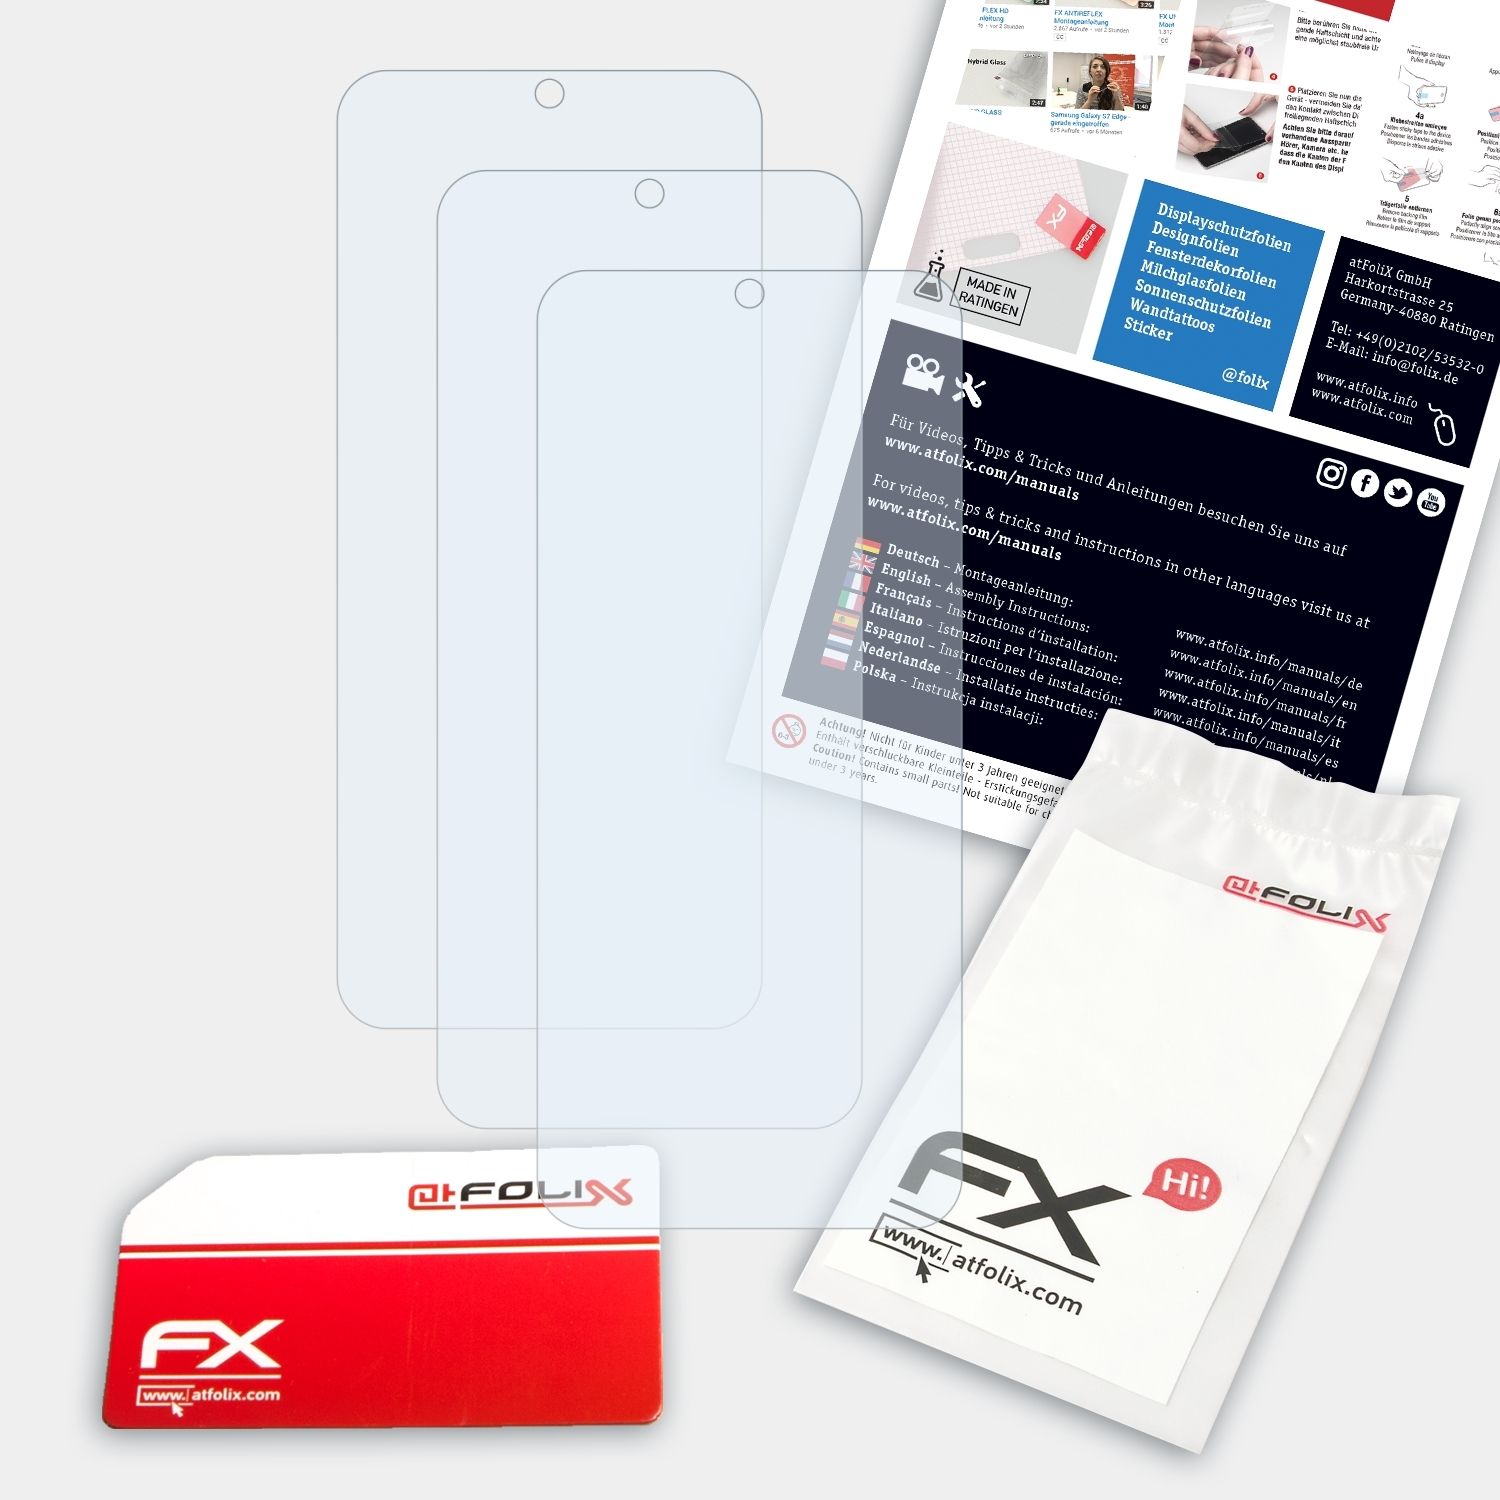 3x ATFOLIX 12) Xiaomi Displayschutz(für FX-Clear